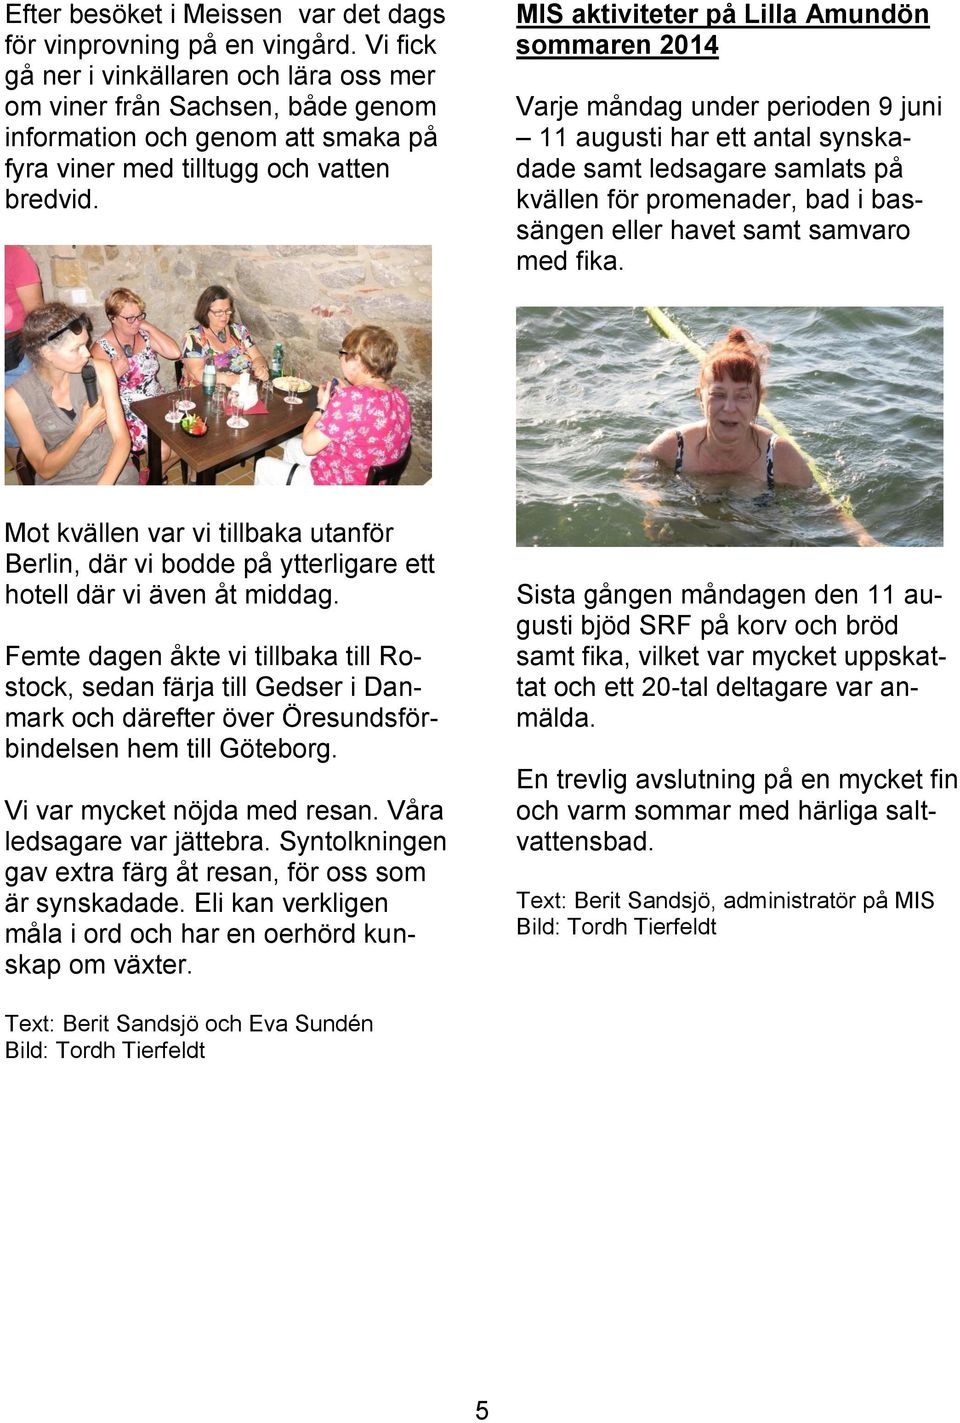 MIS aktiviteter på Lilla Amundön sommaren 2014 Varje måndag under perioden 9 juni 11 augusti har ett antal synskadade samt ledsagare samlats på kvällen för promenader, bad i bassängen eller havet